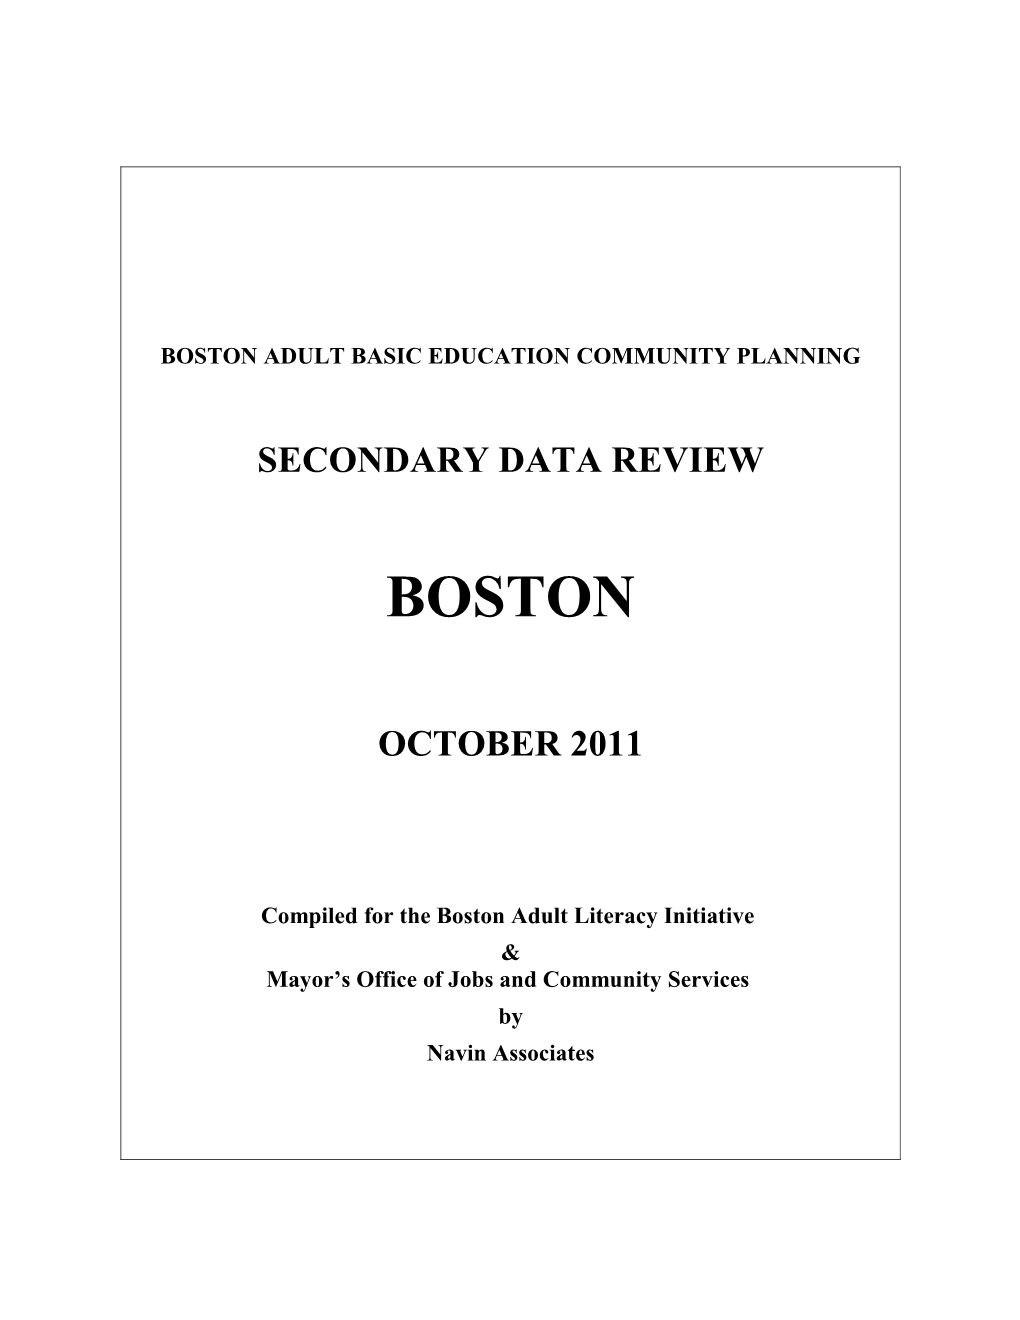 Boston Adult Basic Education Community Planning